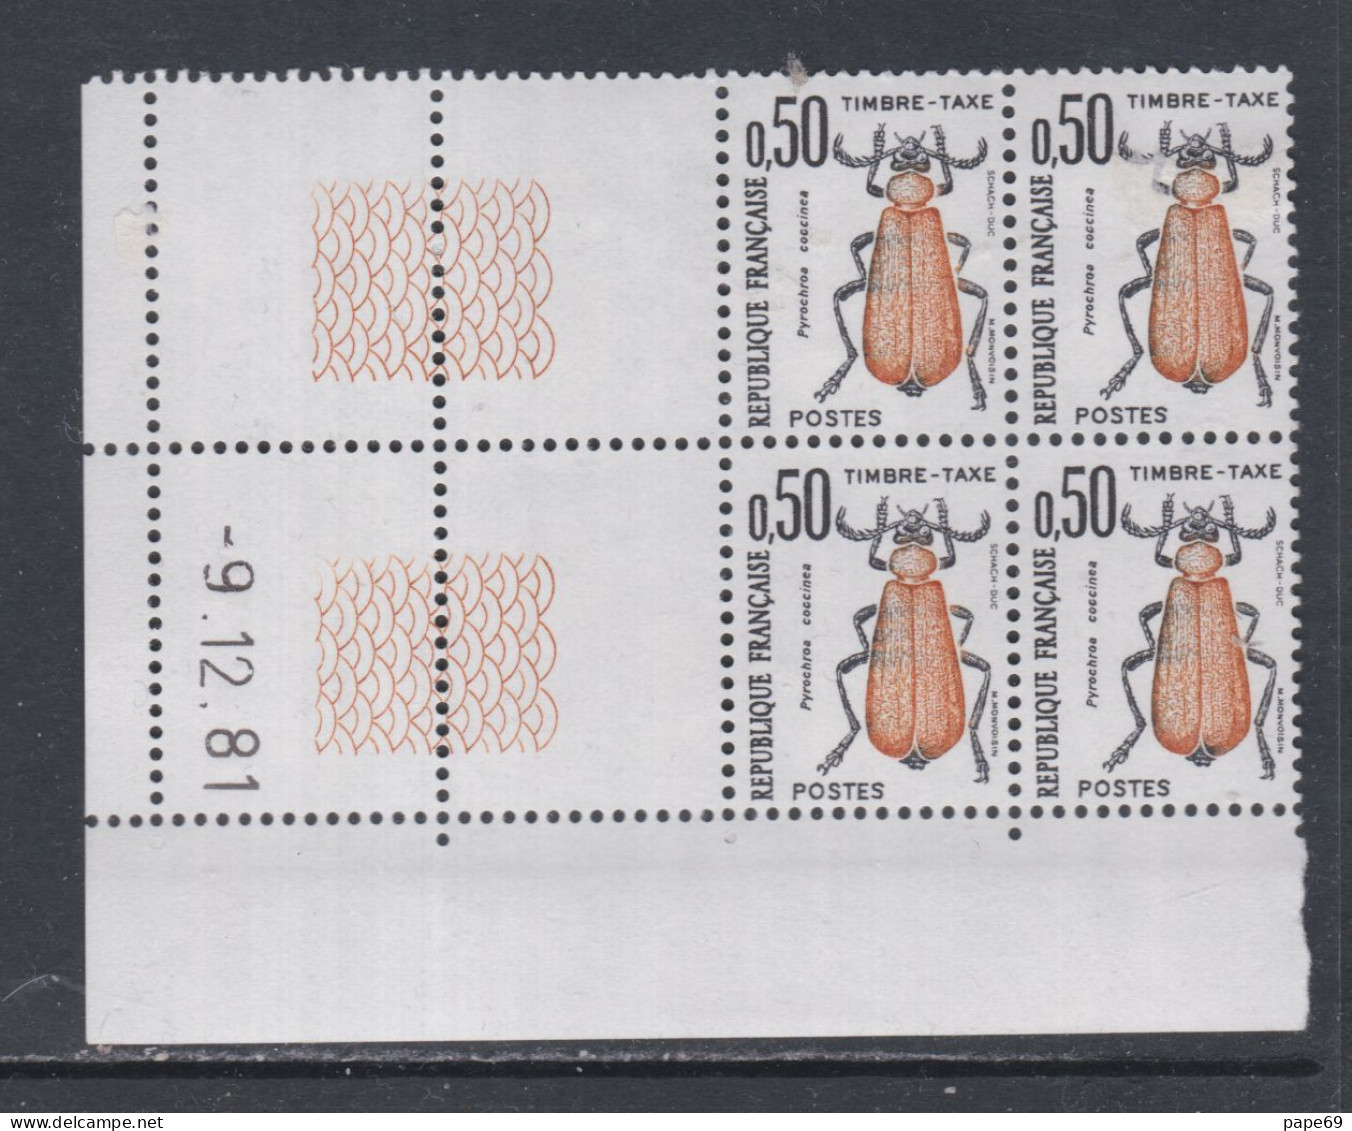 France Timbres-Taxe N° 105 XX Insectes : 50 C. Coléoptère, En Bloc De 4 Coin Daté Du 9 . 12 . 81 ; Sans Trait, Ss Ch. TB - Segnatasse